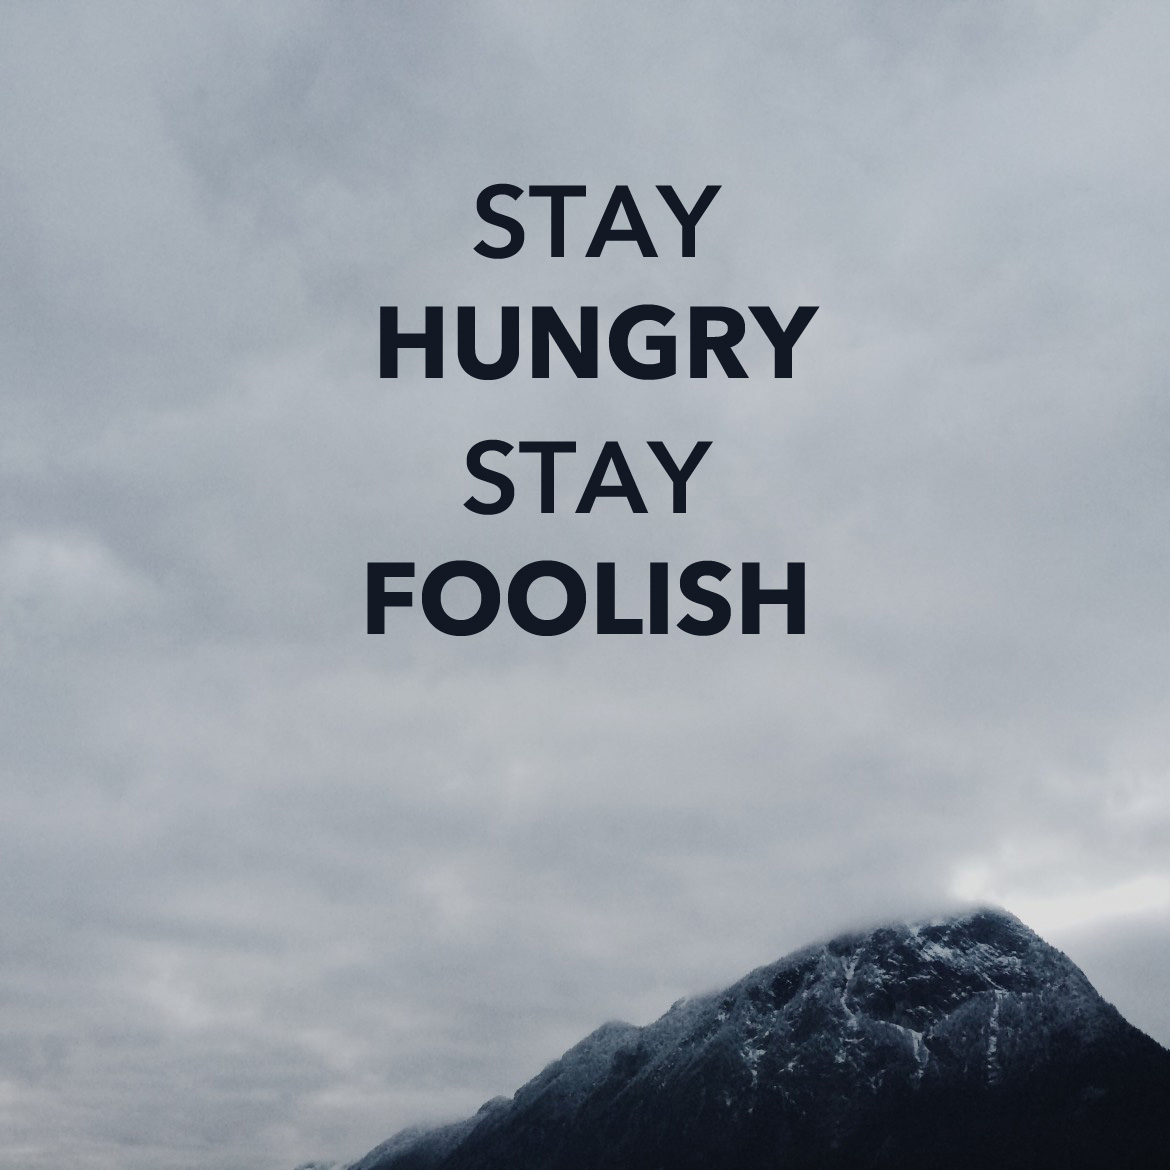 Stay hungry stay foolish. Stay hungry stay Foolish картинка. Stay hungry stay Foolish обои. Stay hungry stay Foolish обои для айфона. Stay hungry stay Foolish смысл.